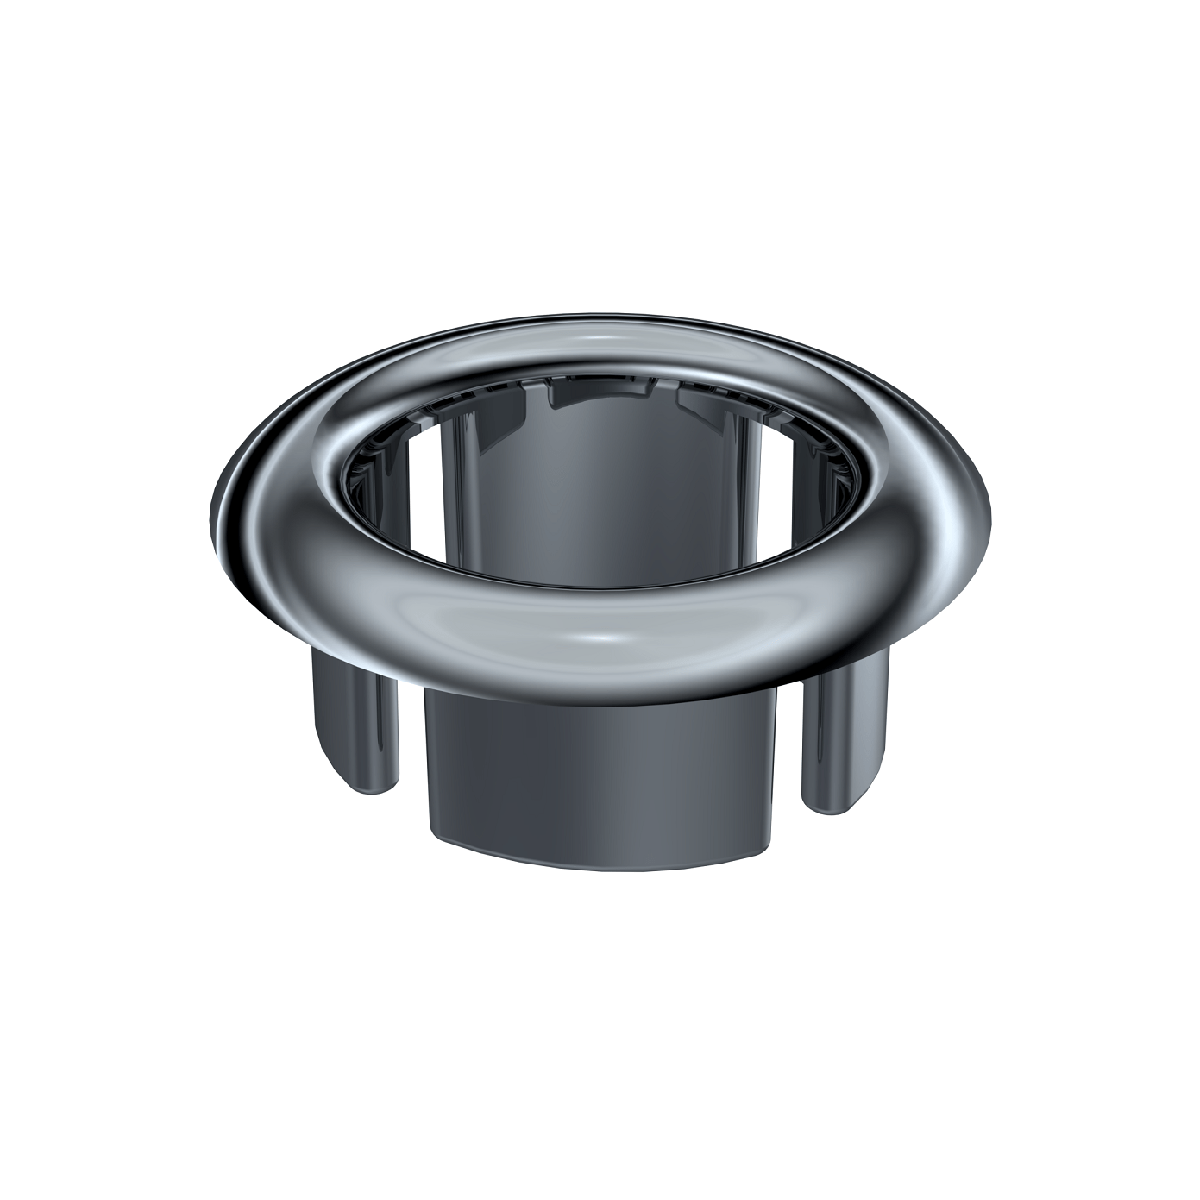  Lavabo Su Taşma Yüzüğü Tüm lavabo deliklerine uygundur. Standart modeldi